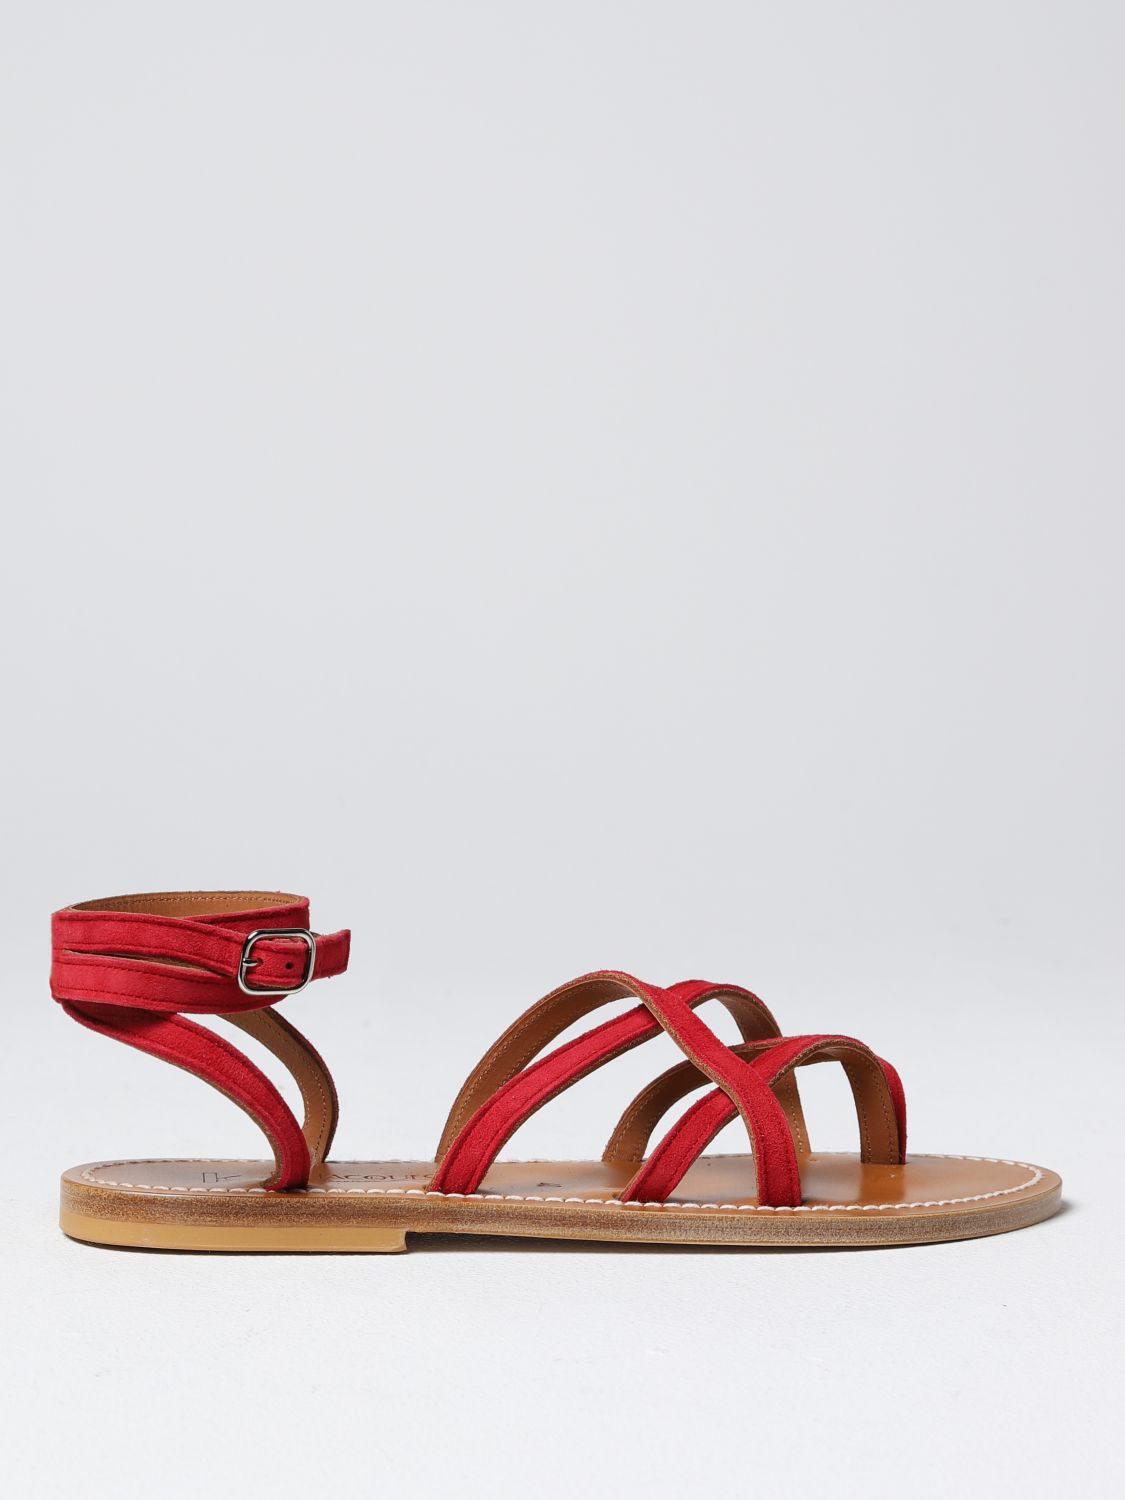 Kjacques Flat Sandals K. Jacques Woman Color Red